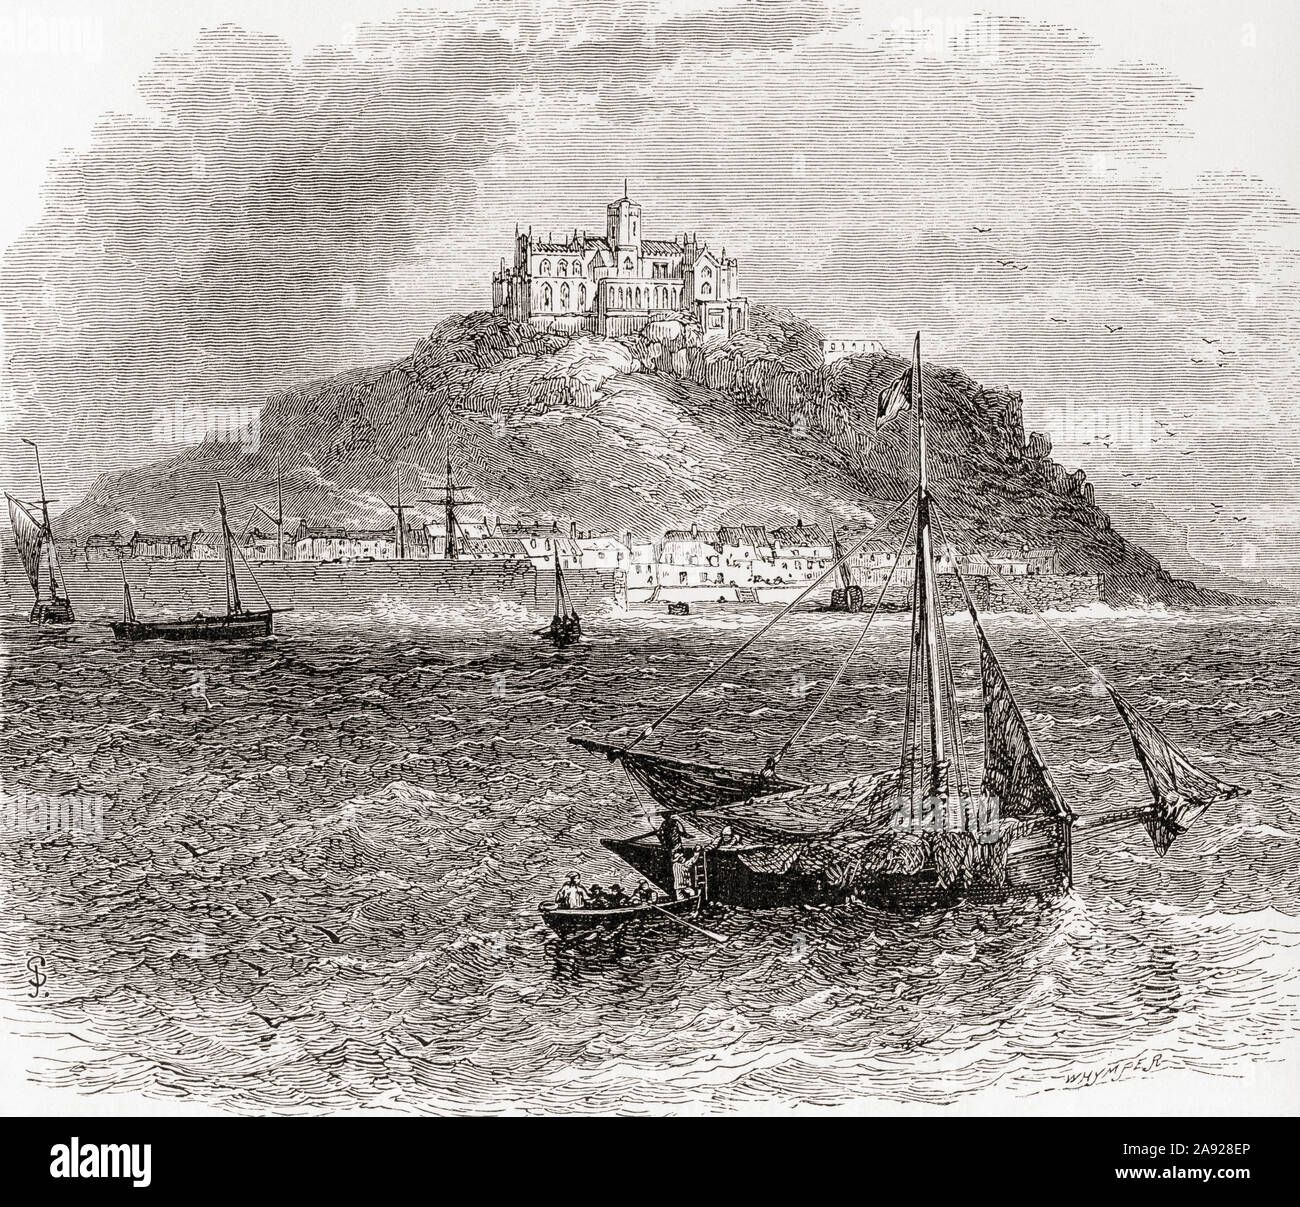 St Michael's Mount, Mount's Bay, Cornwall, England, hier im 19. Jahrhundert. Aus dem Englischen Bilder, veröffentlicht 1890. Stockfoto